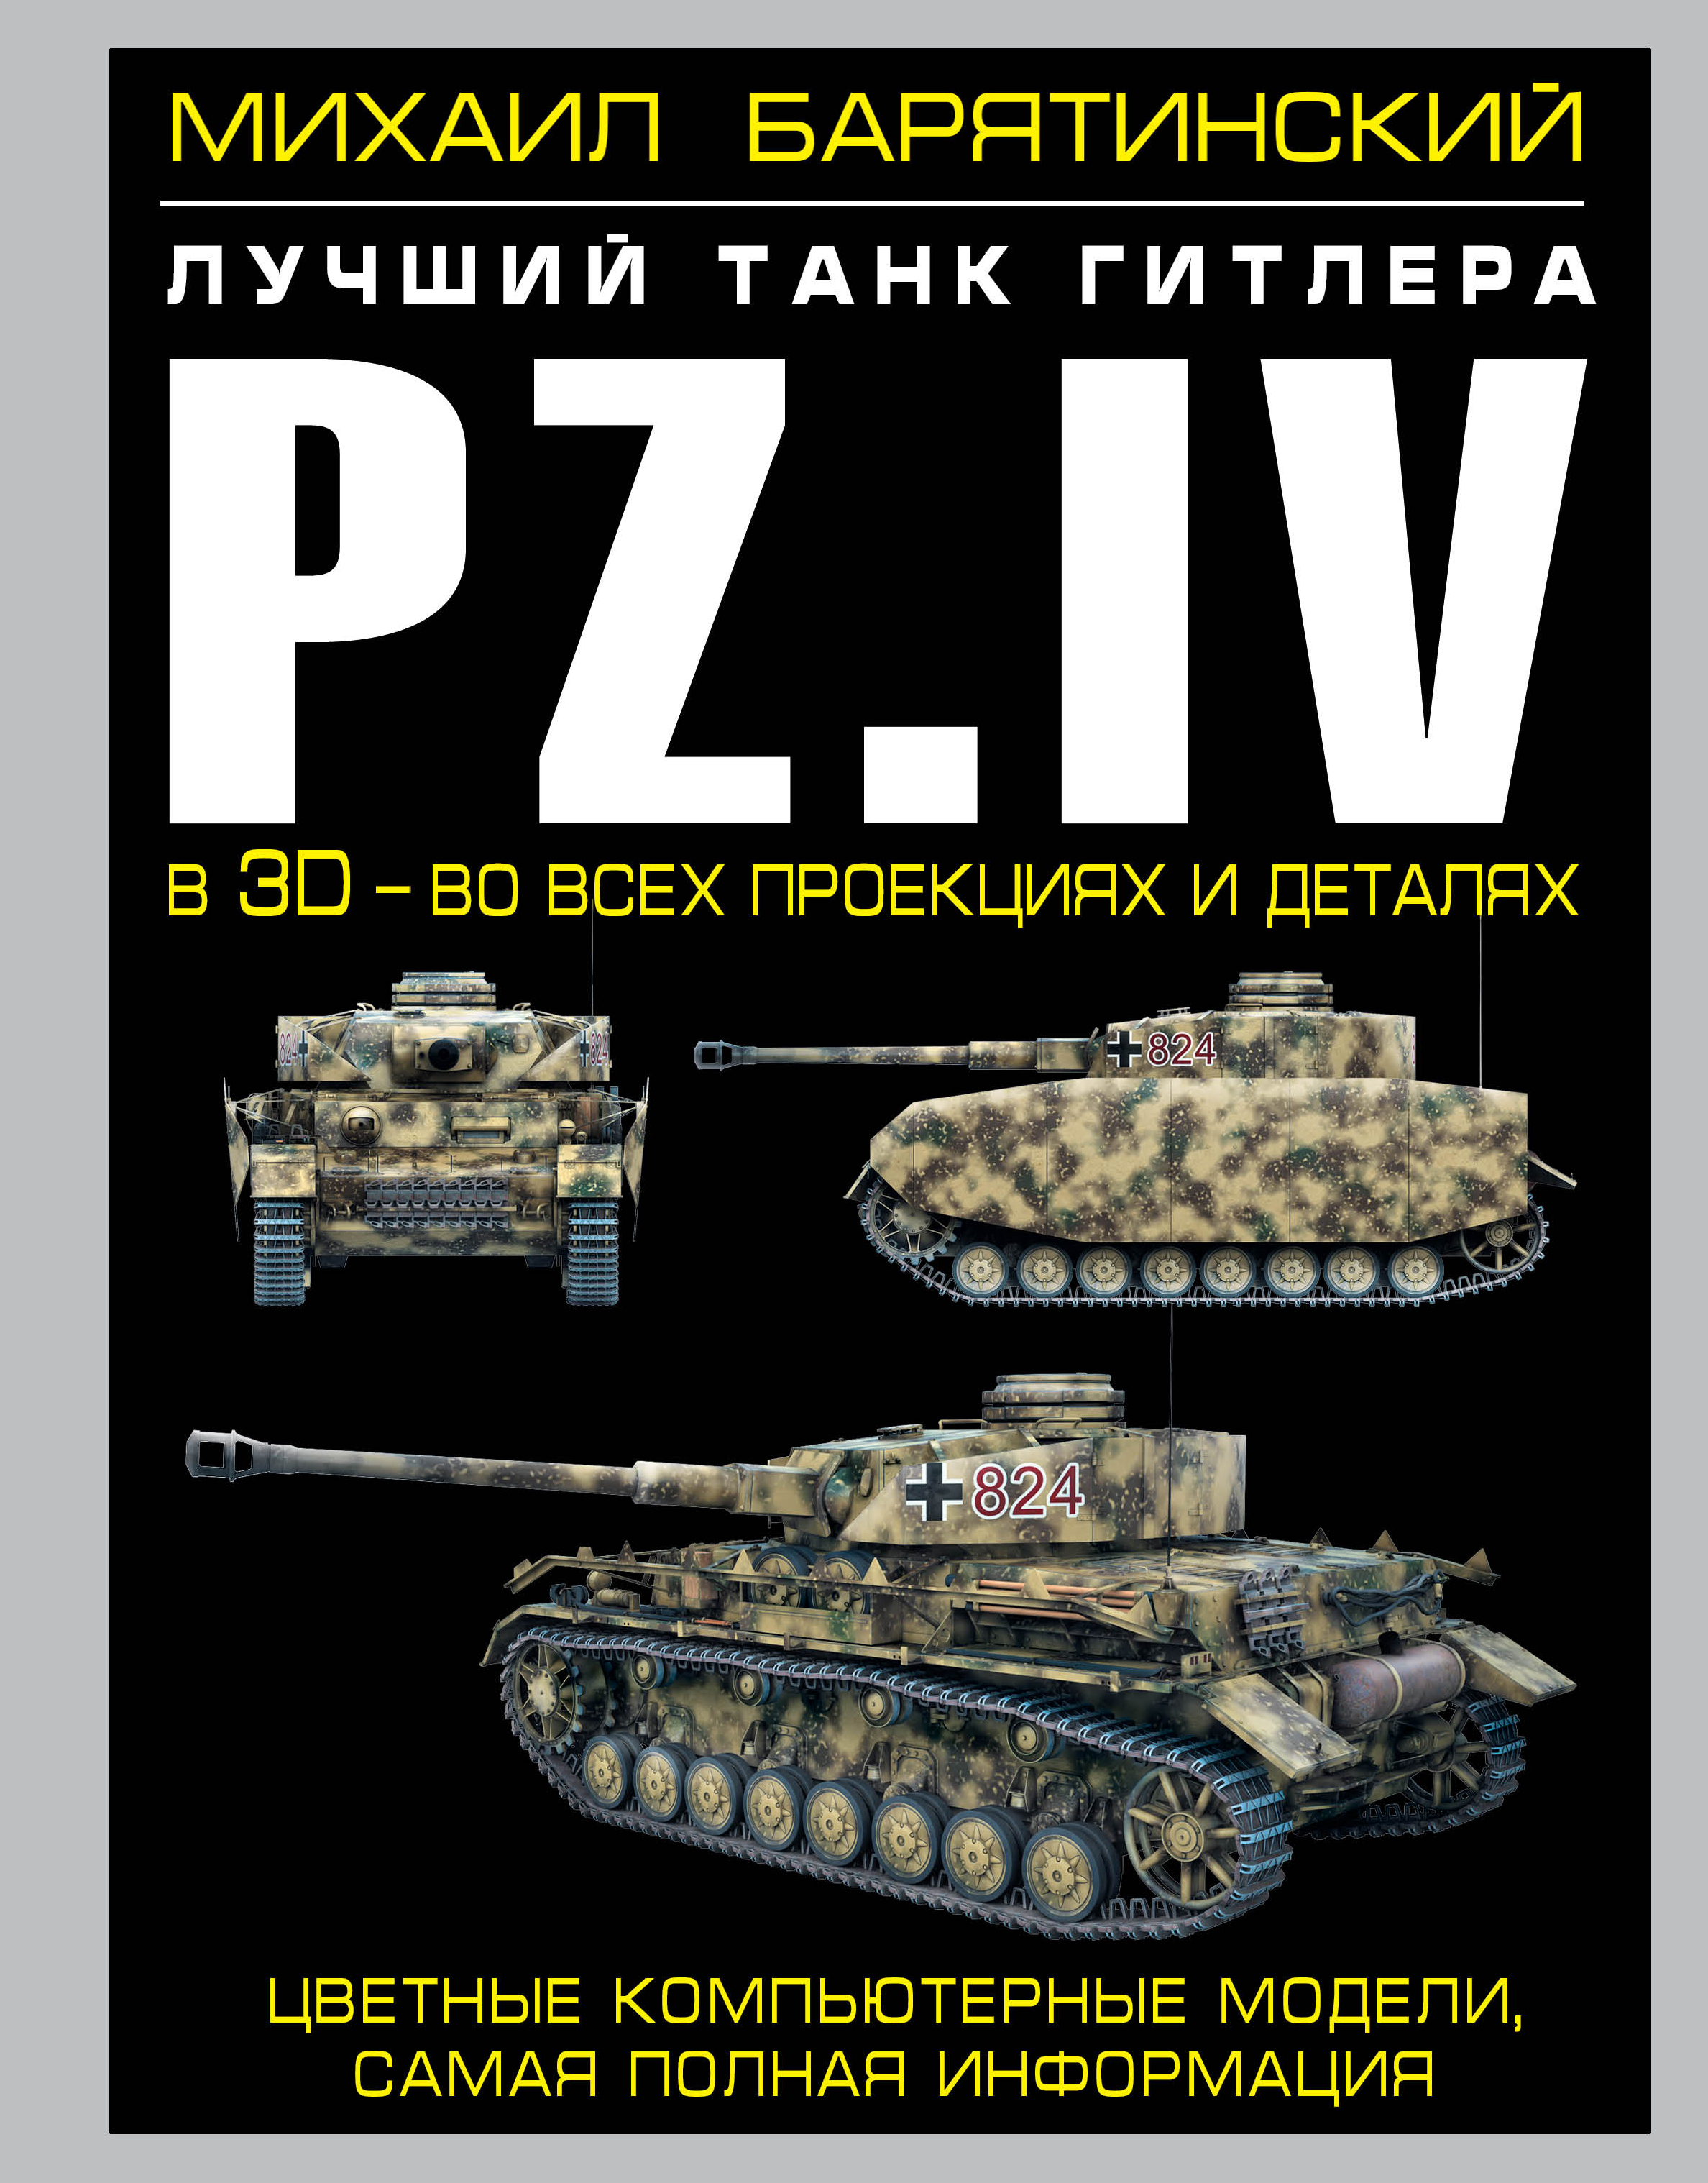 Pz.IV. Лучший танк Гитлера в 3D - во всех проекциях и деталях случается ласково заботясь